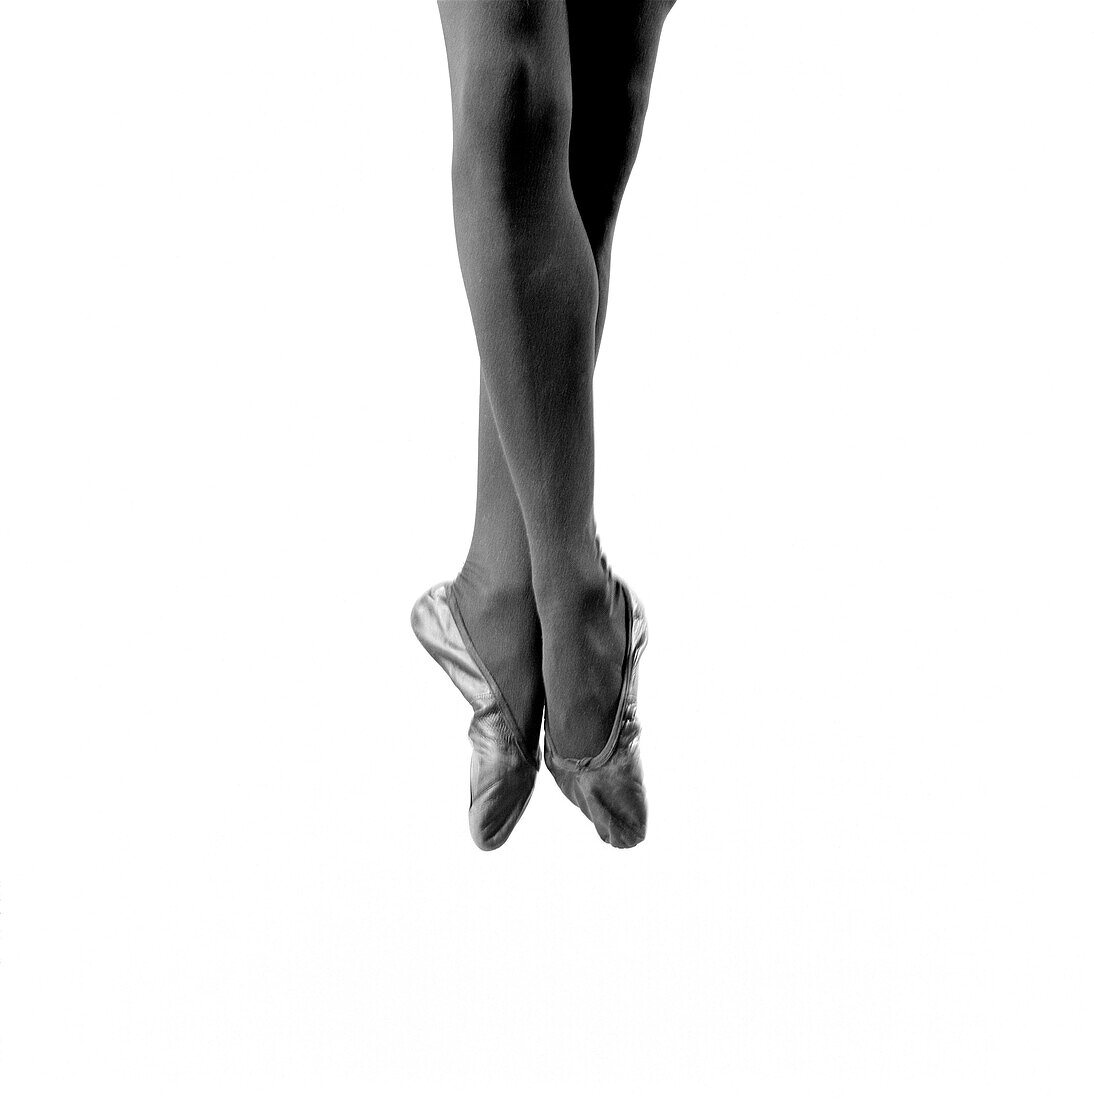 Ballerina's Legs